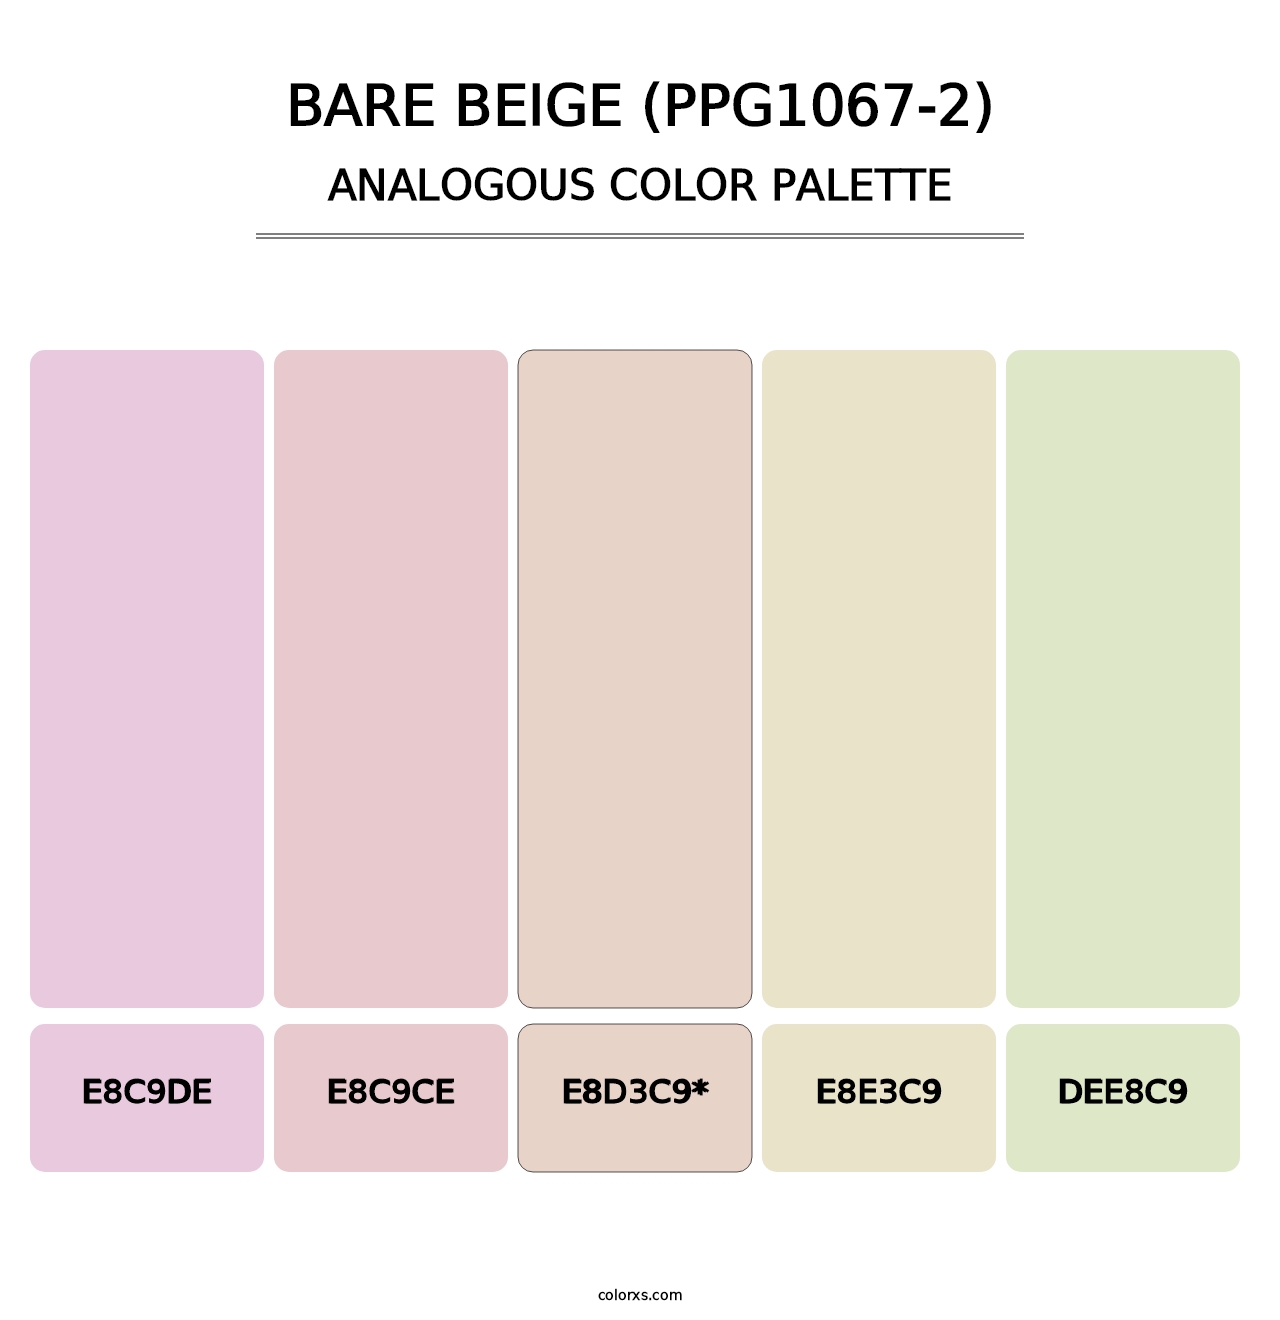 Bare Beige (PPG1067-2) - Analogous Color Palette